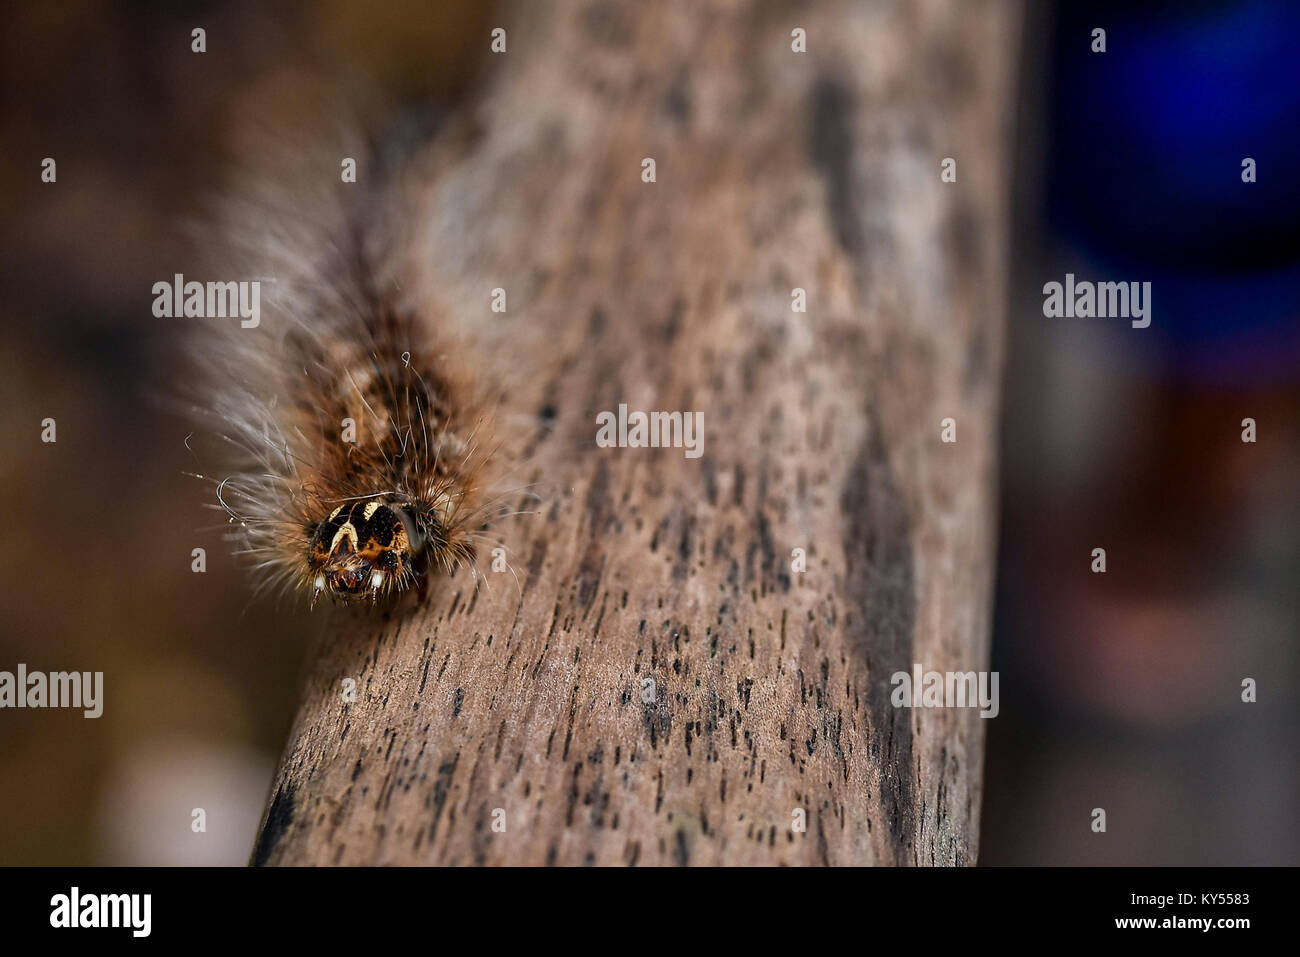 La spongieuse poilu poilue balades caterpillar une longue main courante en bois d'une jungle de marche en Asie du Sud est close up avec la profondeur de champ. Banque D'Images